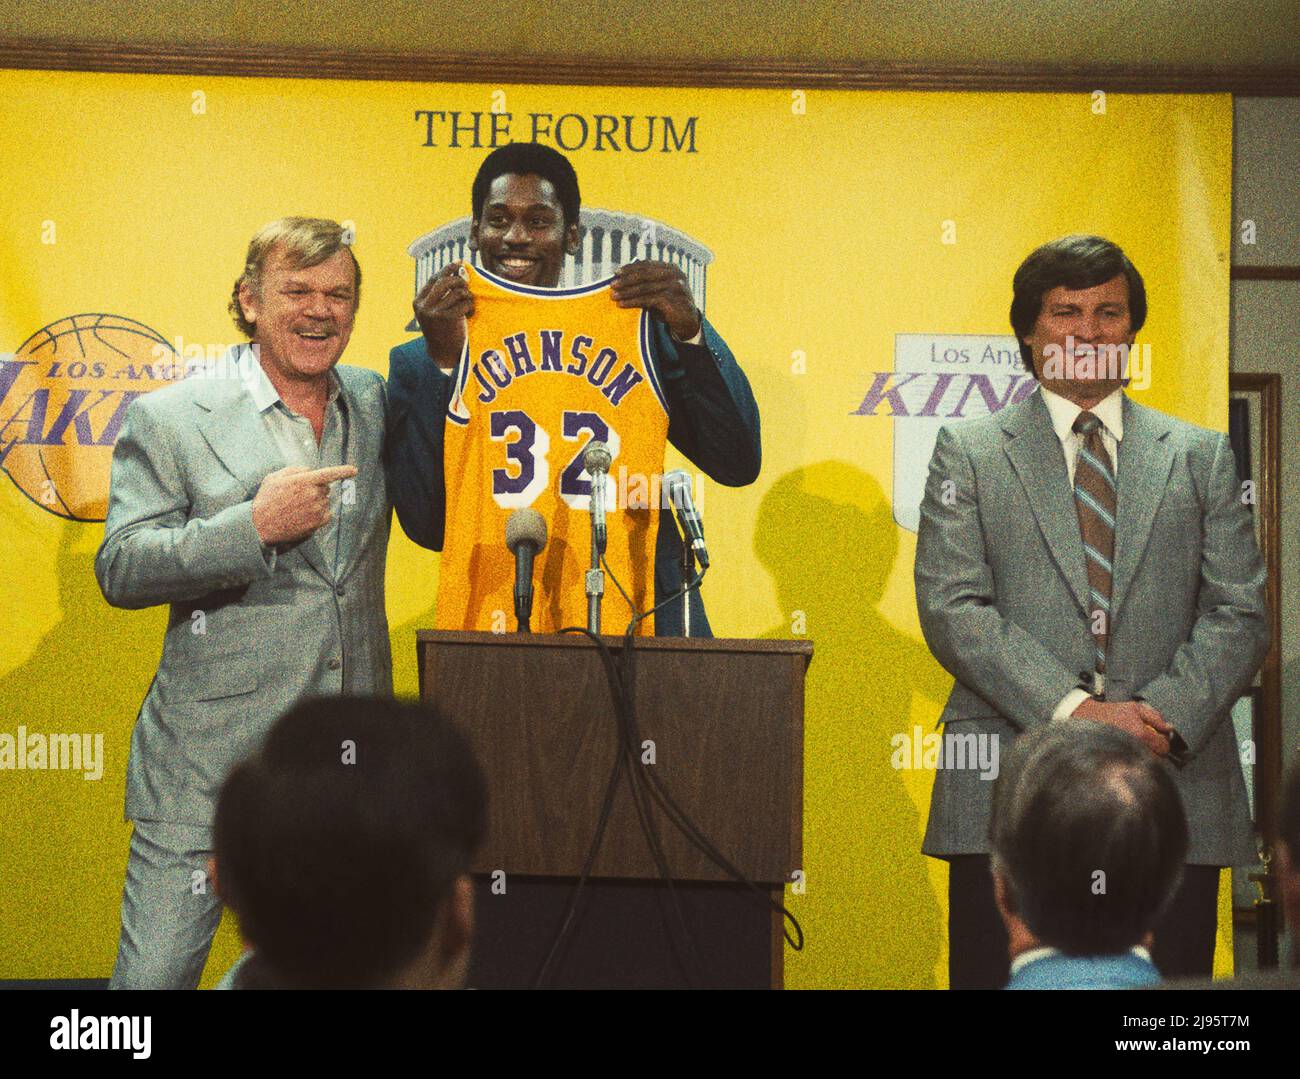 Siegerzeit: Der Aufstieg der Lakers-Dynastie (TV-Serie): John C. Reilly als Jerry Bus, Quincy Isaiah als Magic Johnson, Jason Clarke als Jerry West Stockfoto